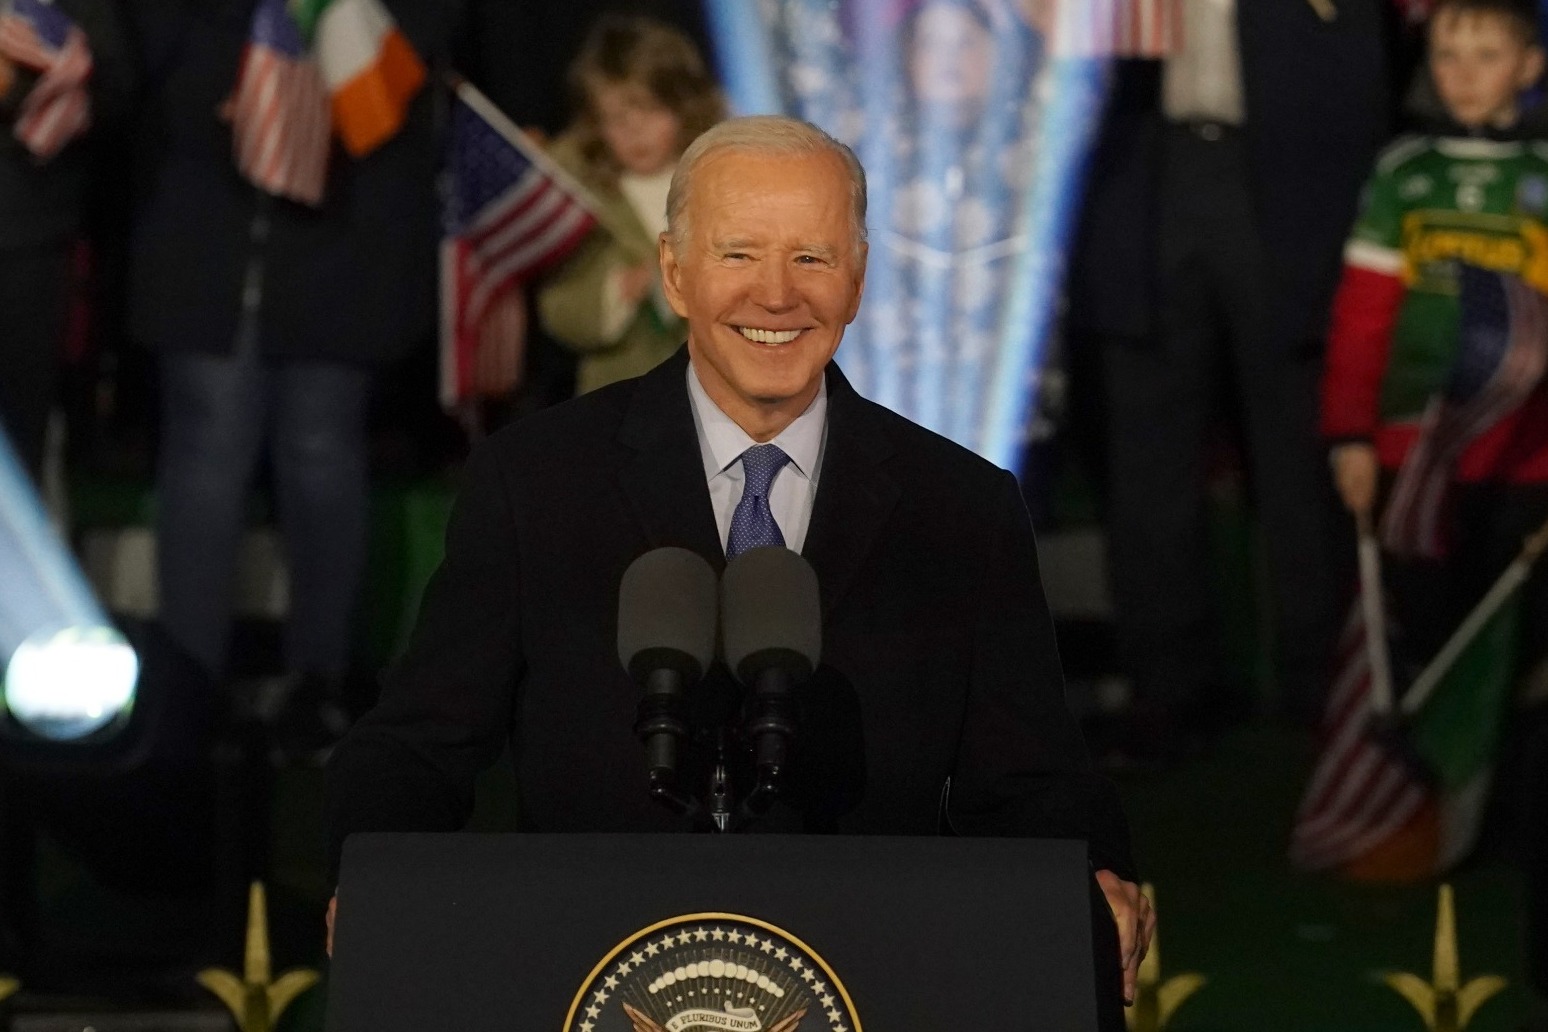 Joe Biden ends emotional final day in Ireland with speech on ‘fierce’ ancestry pride 